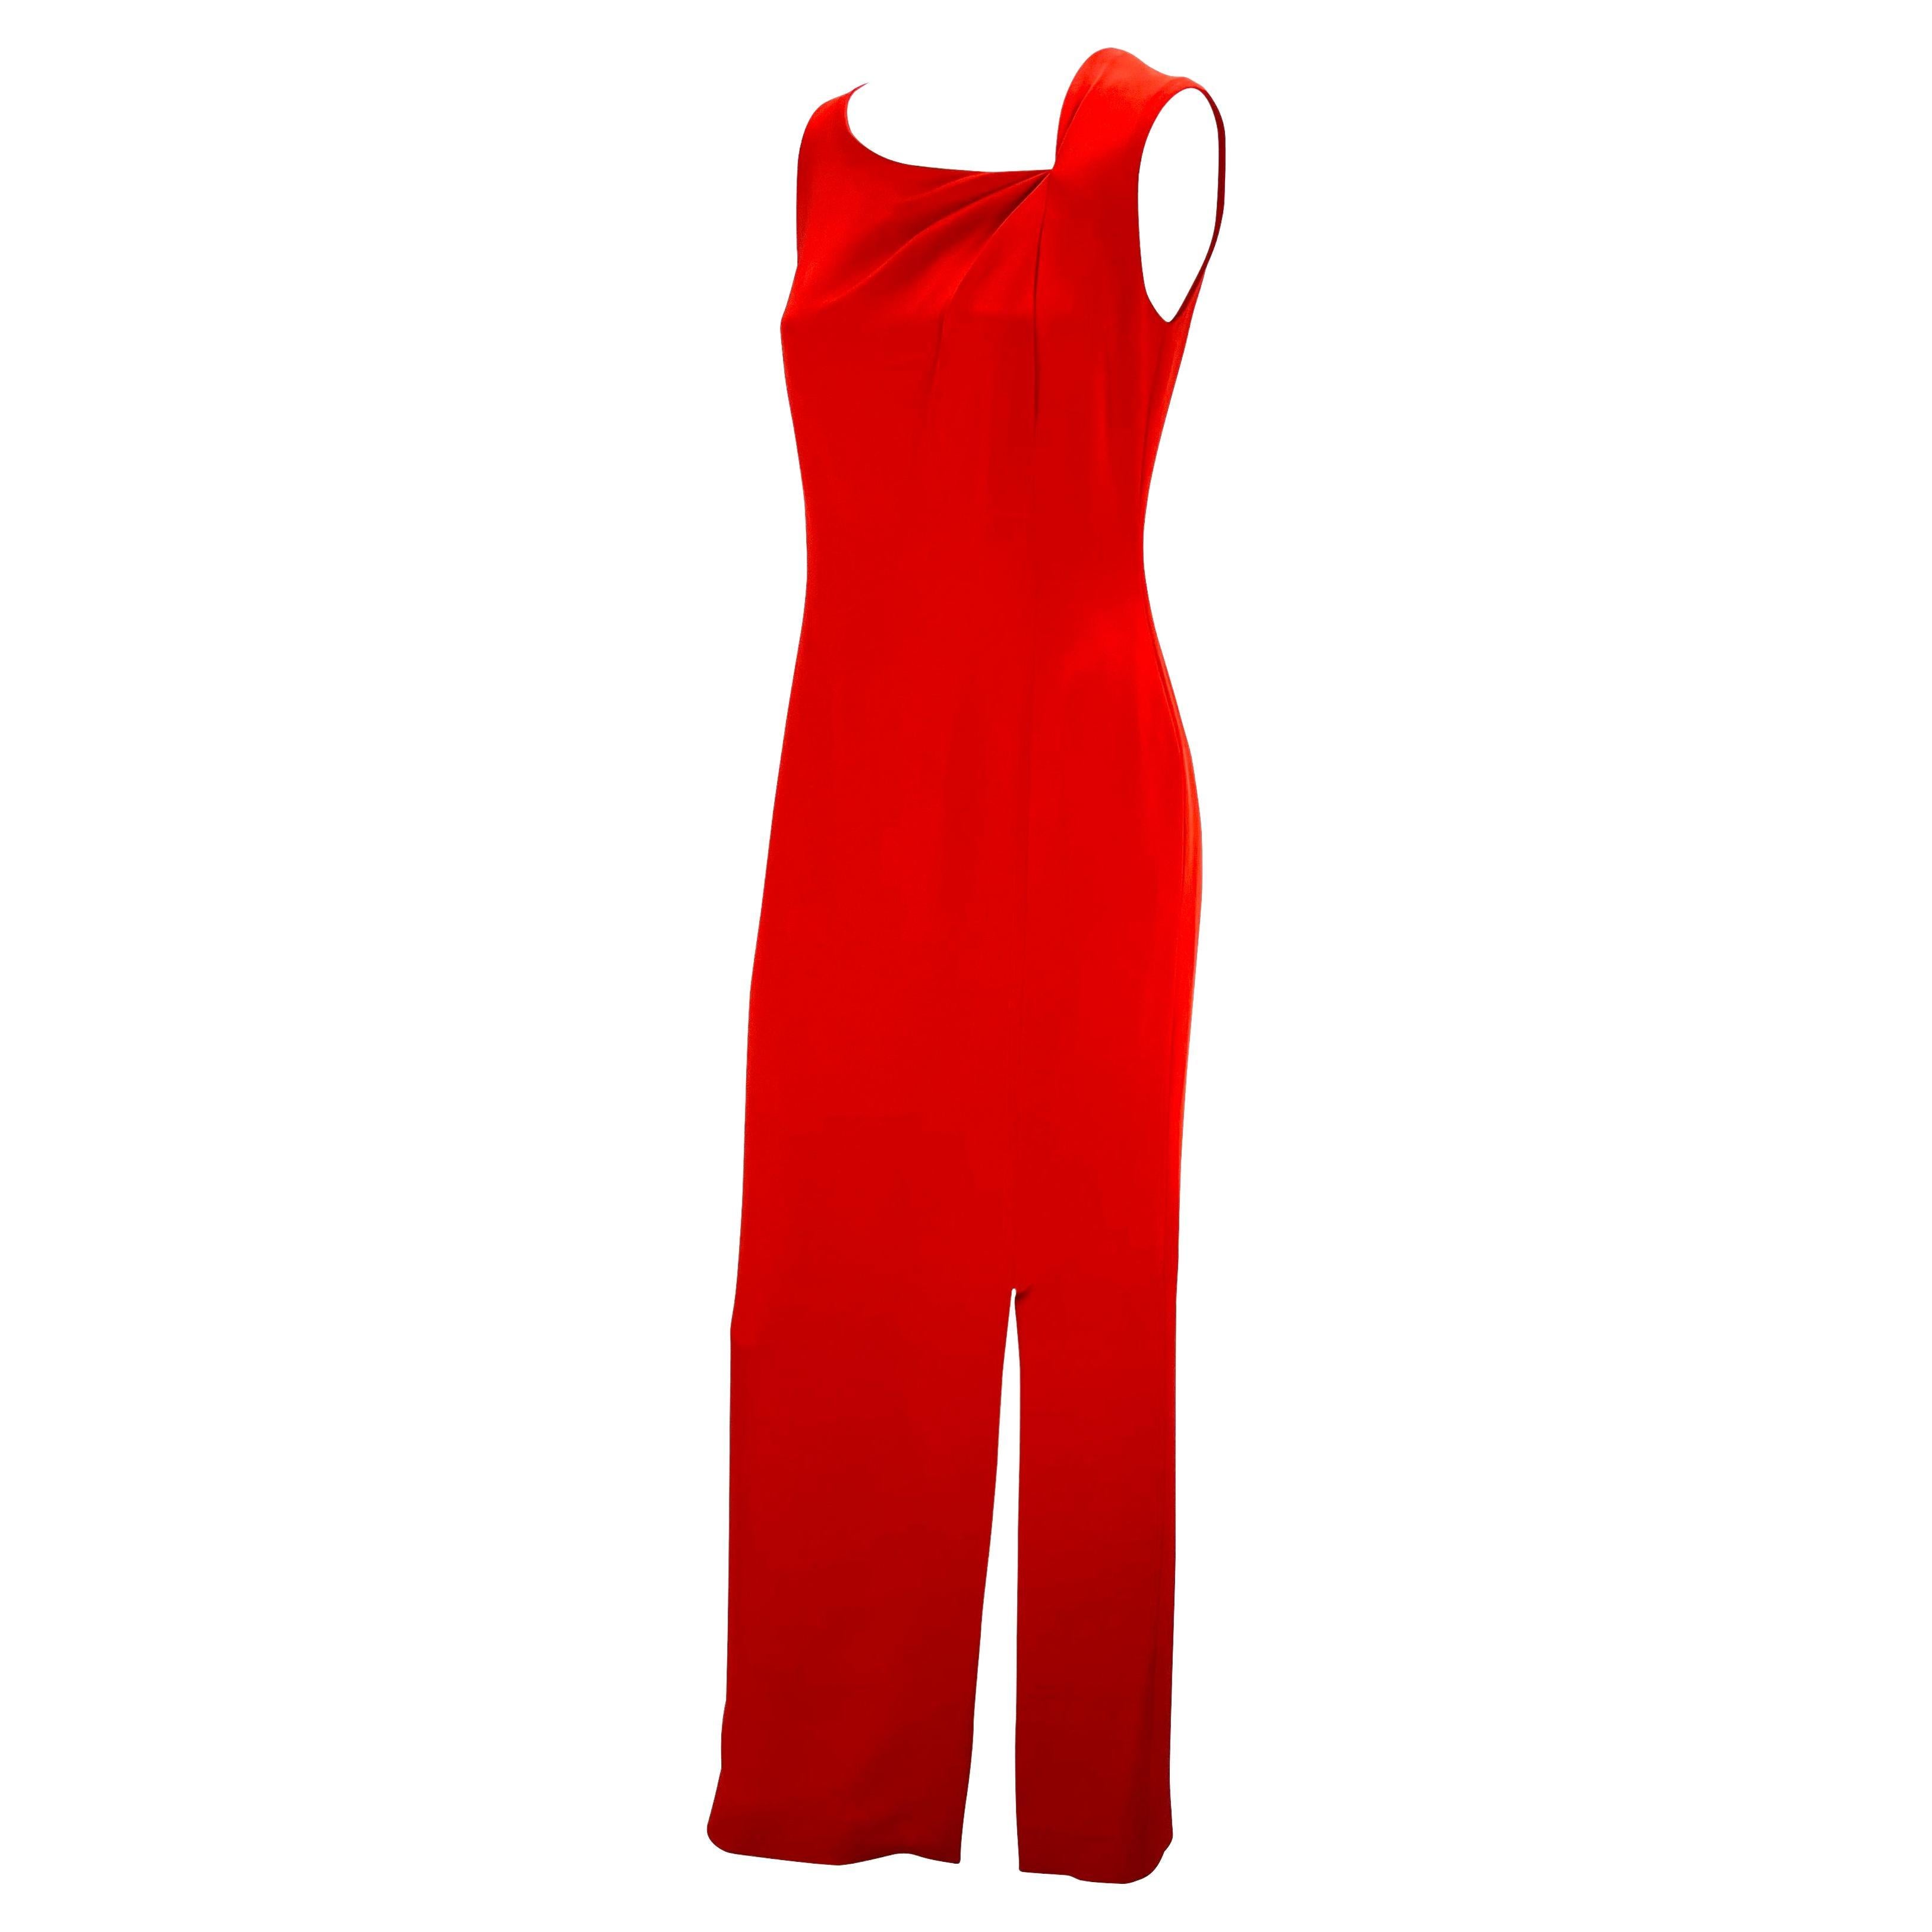 Billing présente une magnifique robe rouge sans manches de Bill Blass Couture. Datant des années 1990, cette élégante et intemporelle robe de style colonne présente une encolure asymétrique avec un tissu froncé pour créer de la dimension. La robe